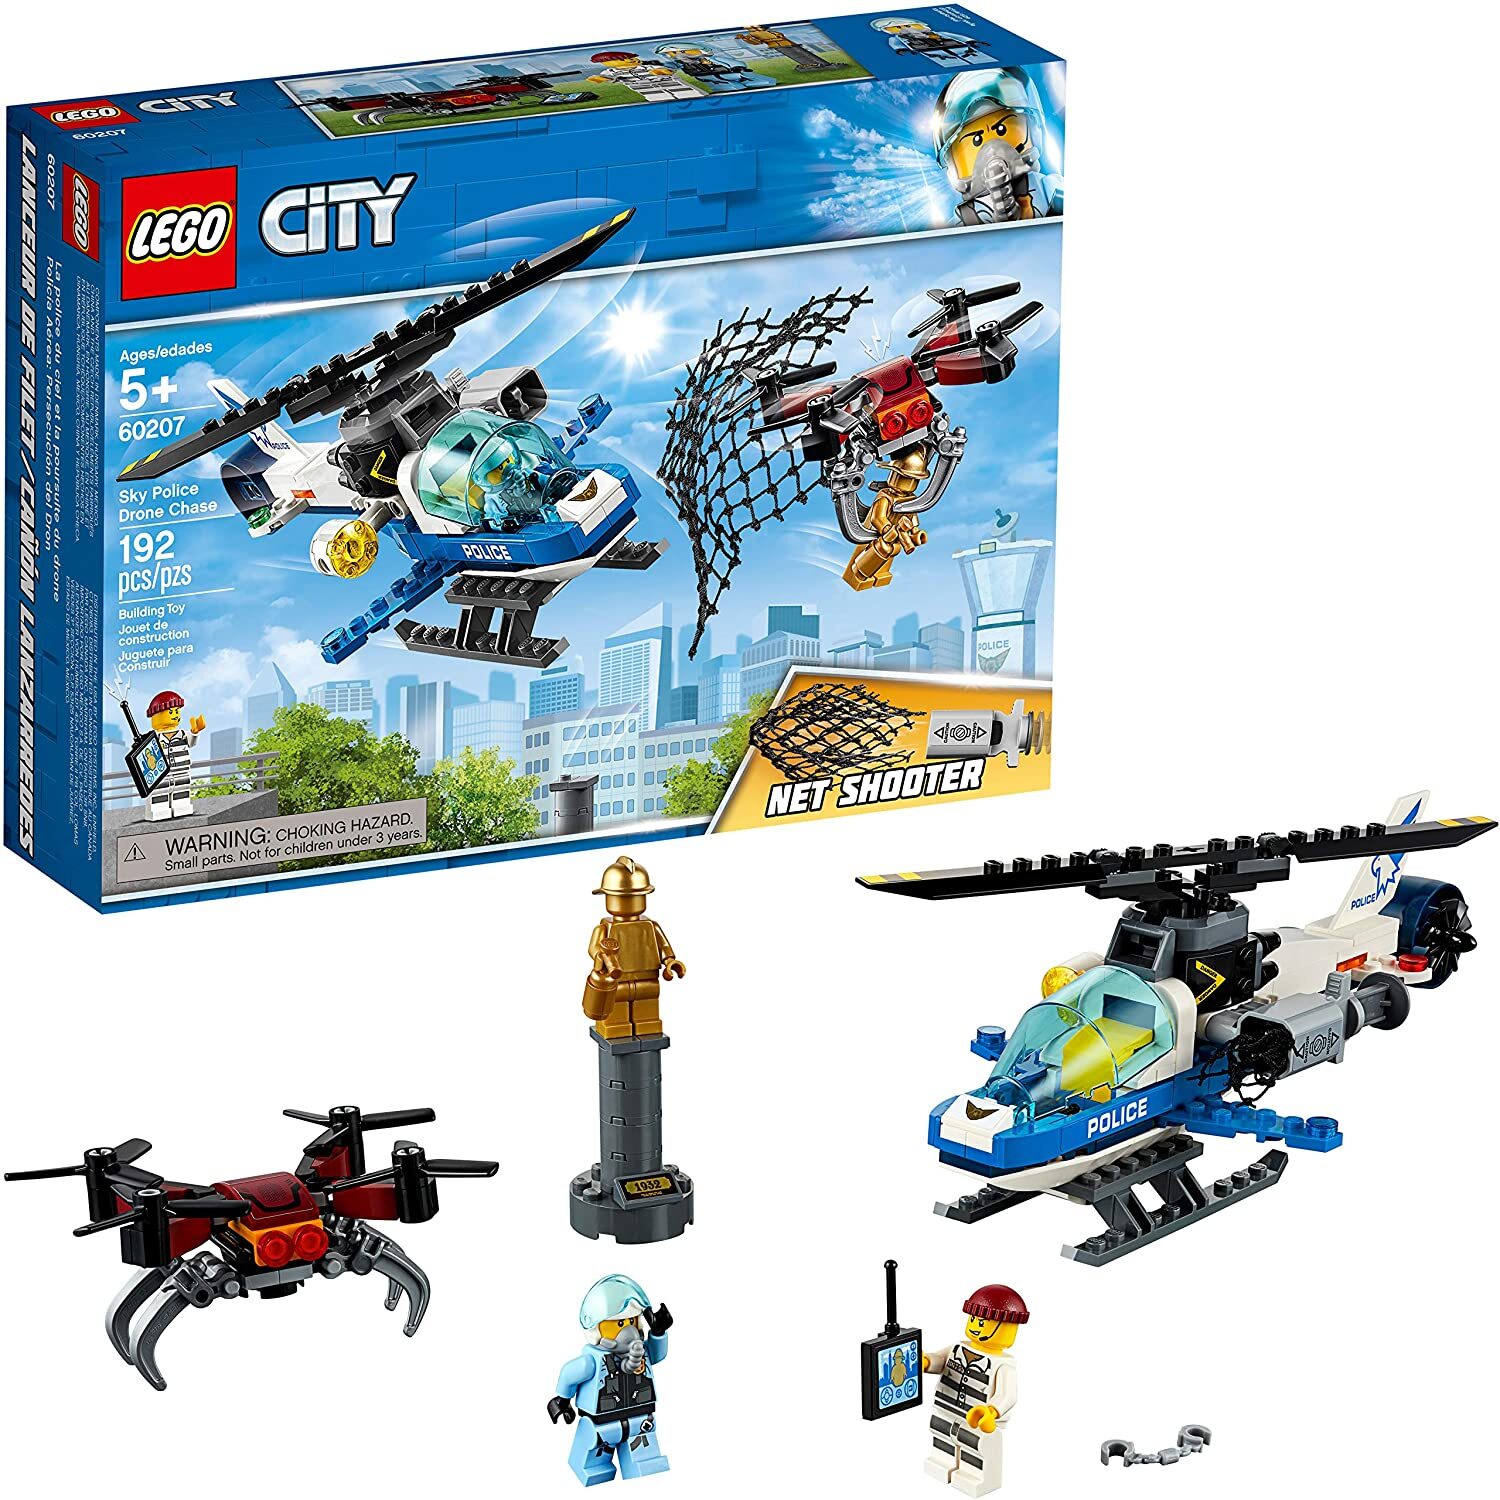 Bộ lắp ráp Truy bắt máy bay không người lái Lego City 60207